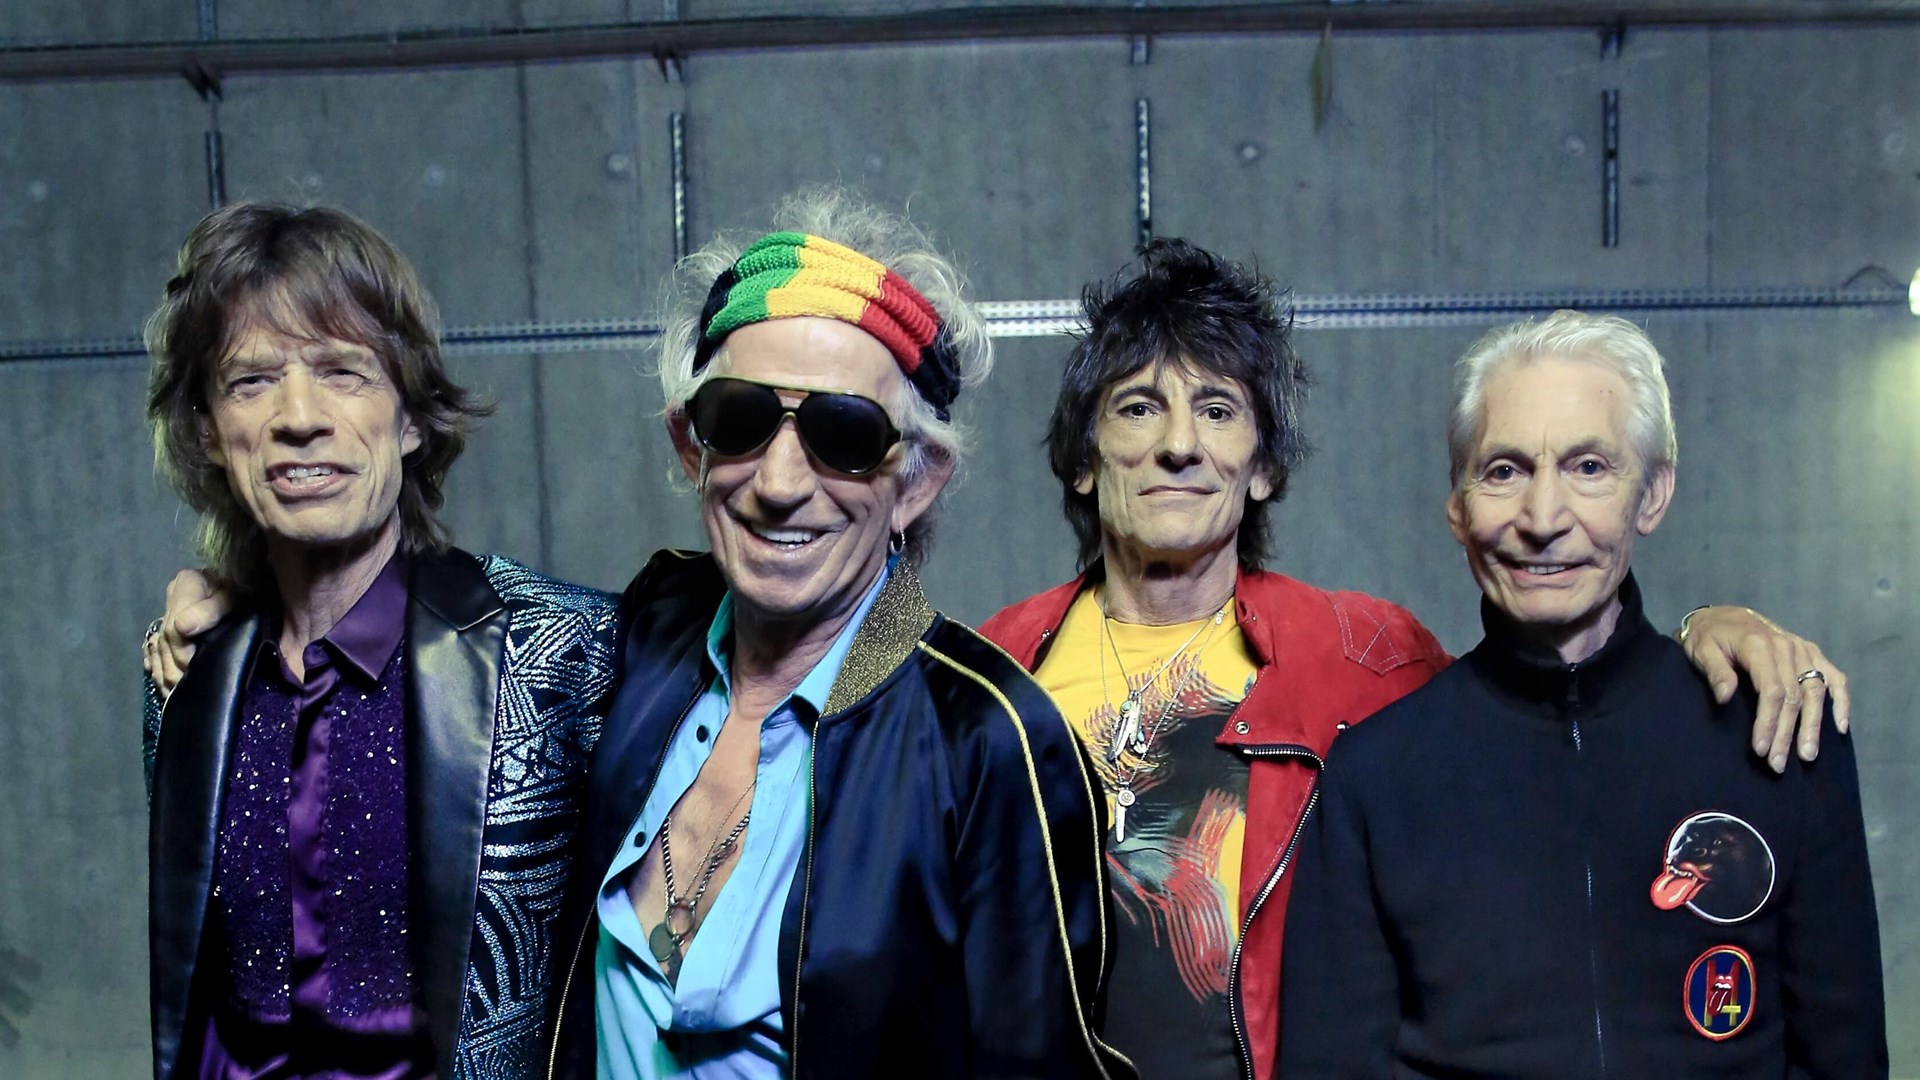 Οι Rolling Stones βγαίνουν ξανά σε περιοδεία στις ΗΠΑ, που την αποκαλούν “No Filter Tour”